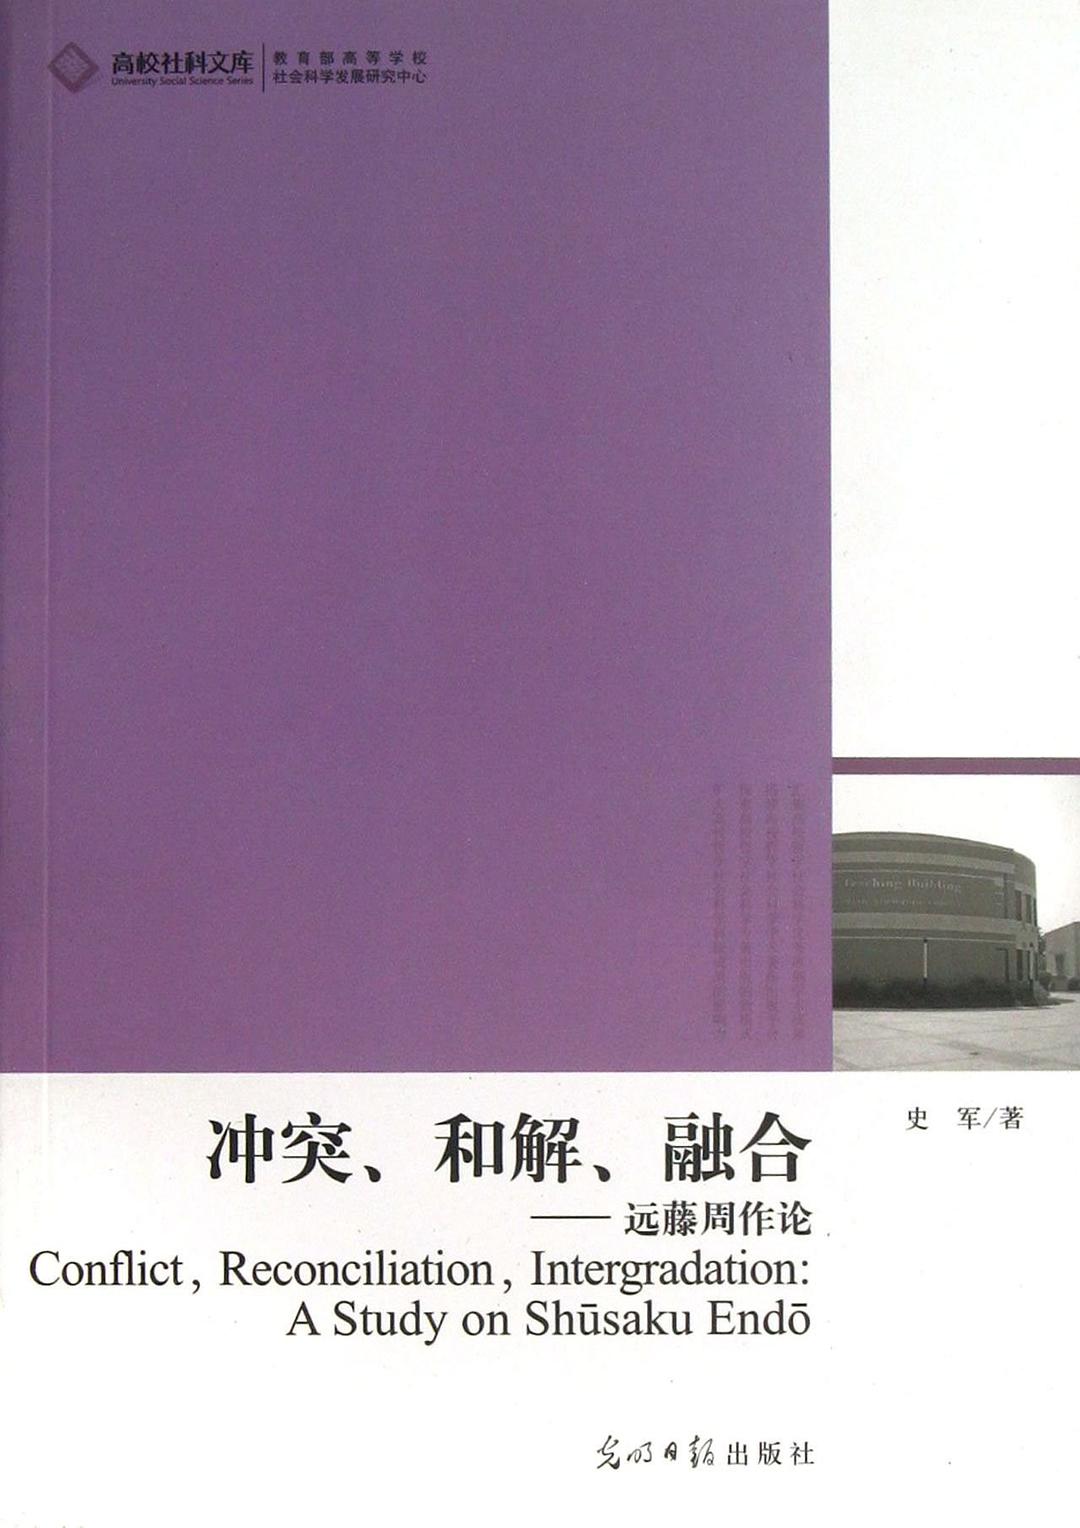 冲突、和解、融合 远藤周作论 a study on Shusaku Endo